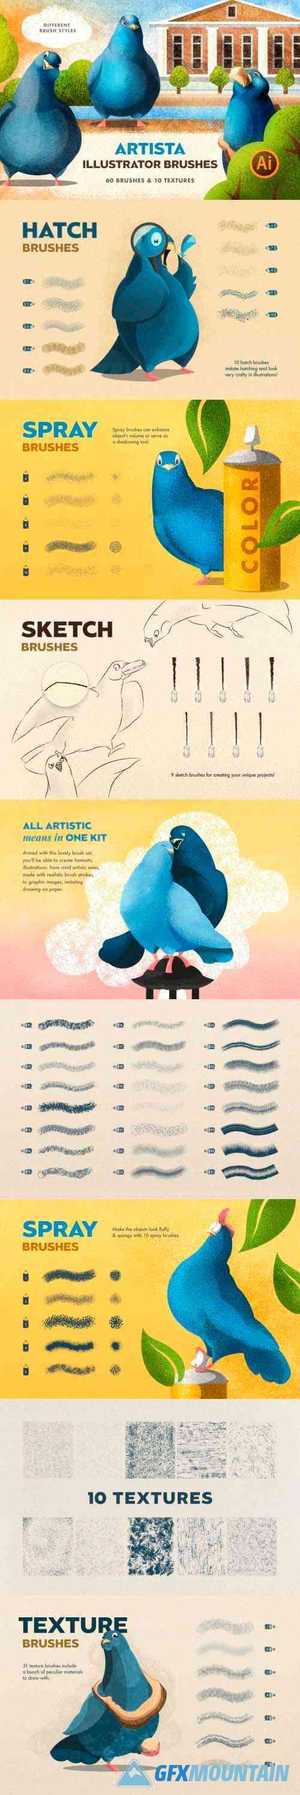 Artista Brushes for Illustrator 5032114